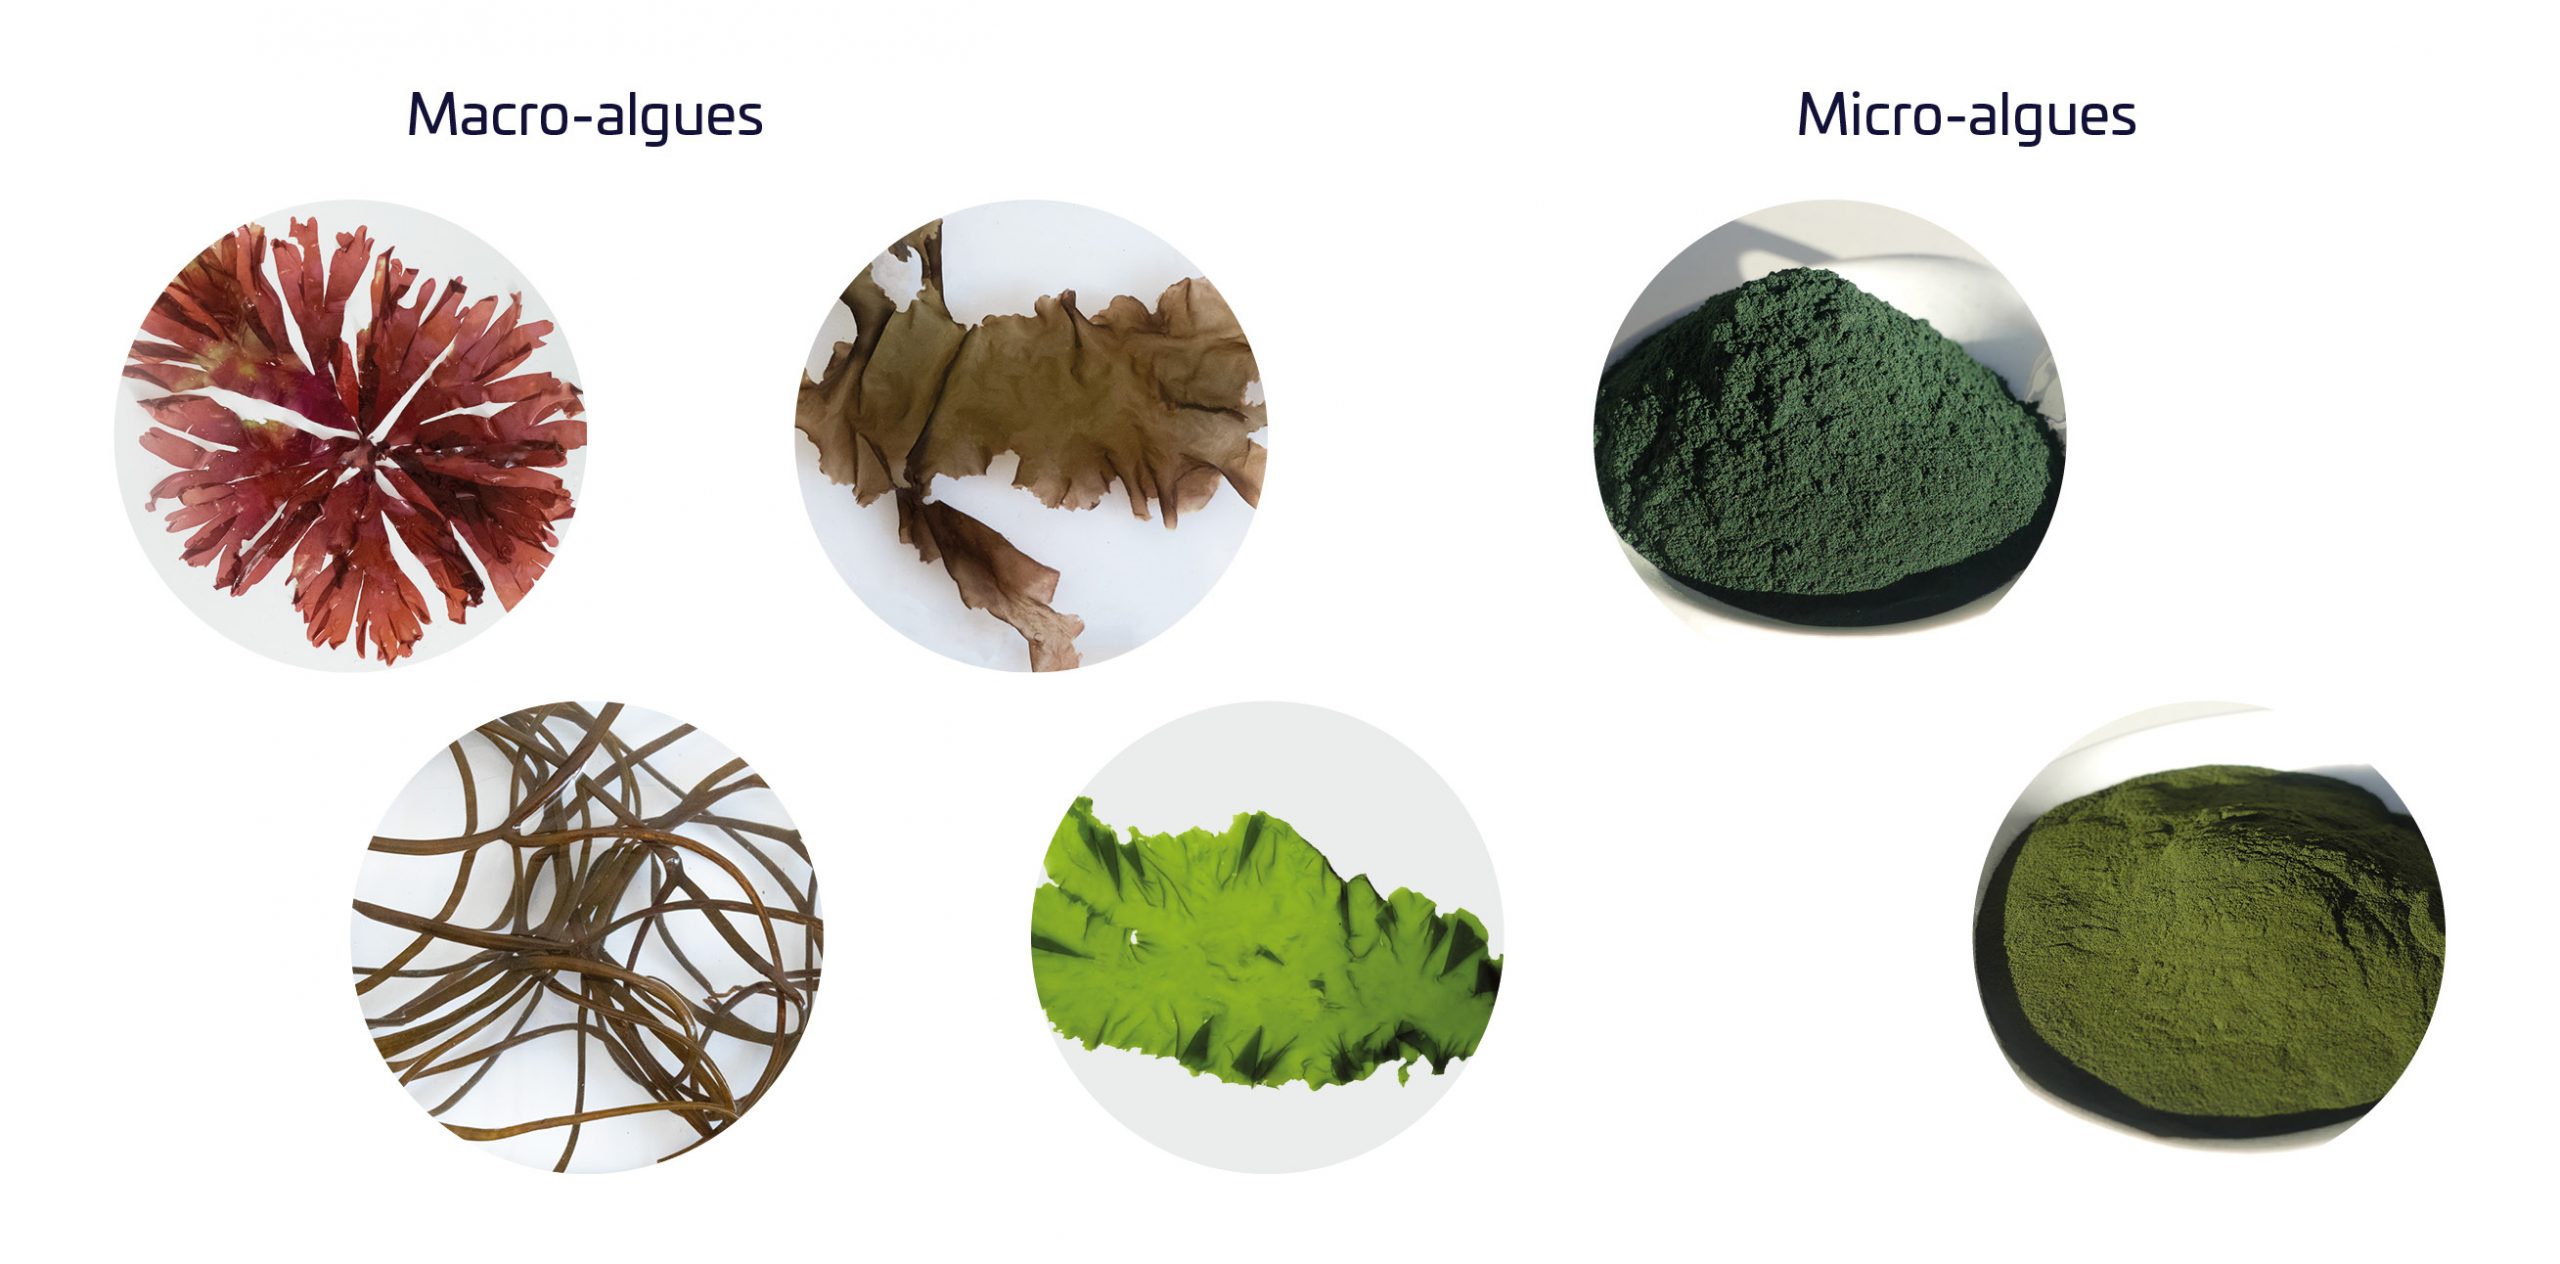 Combinaison d'images de macro-algues et micro-algues